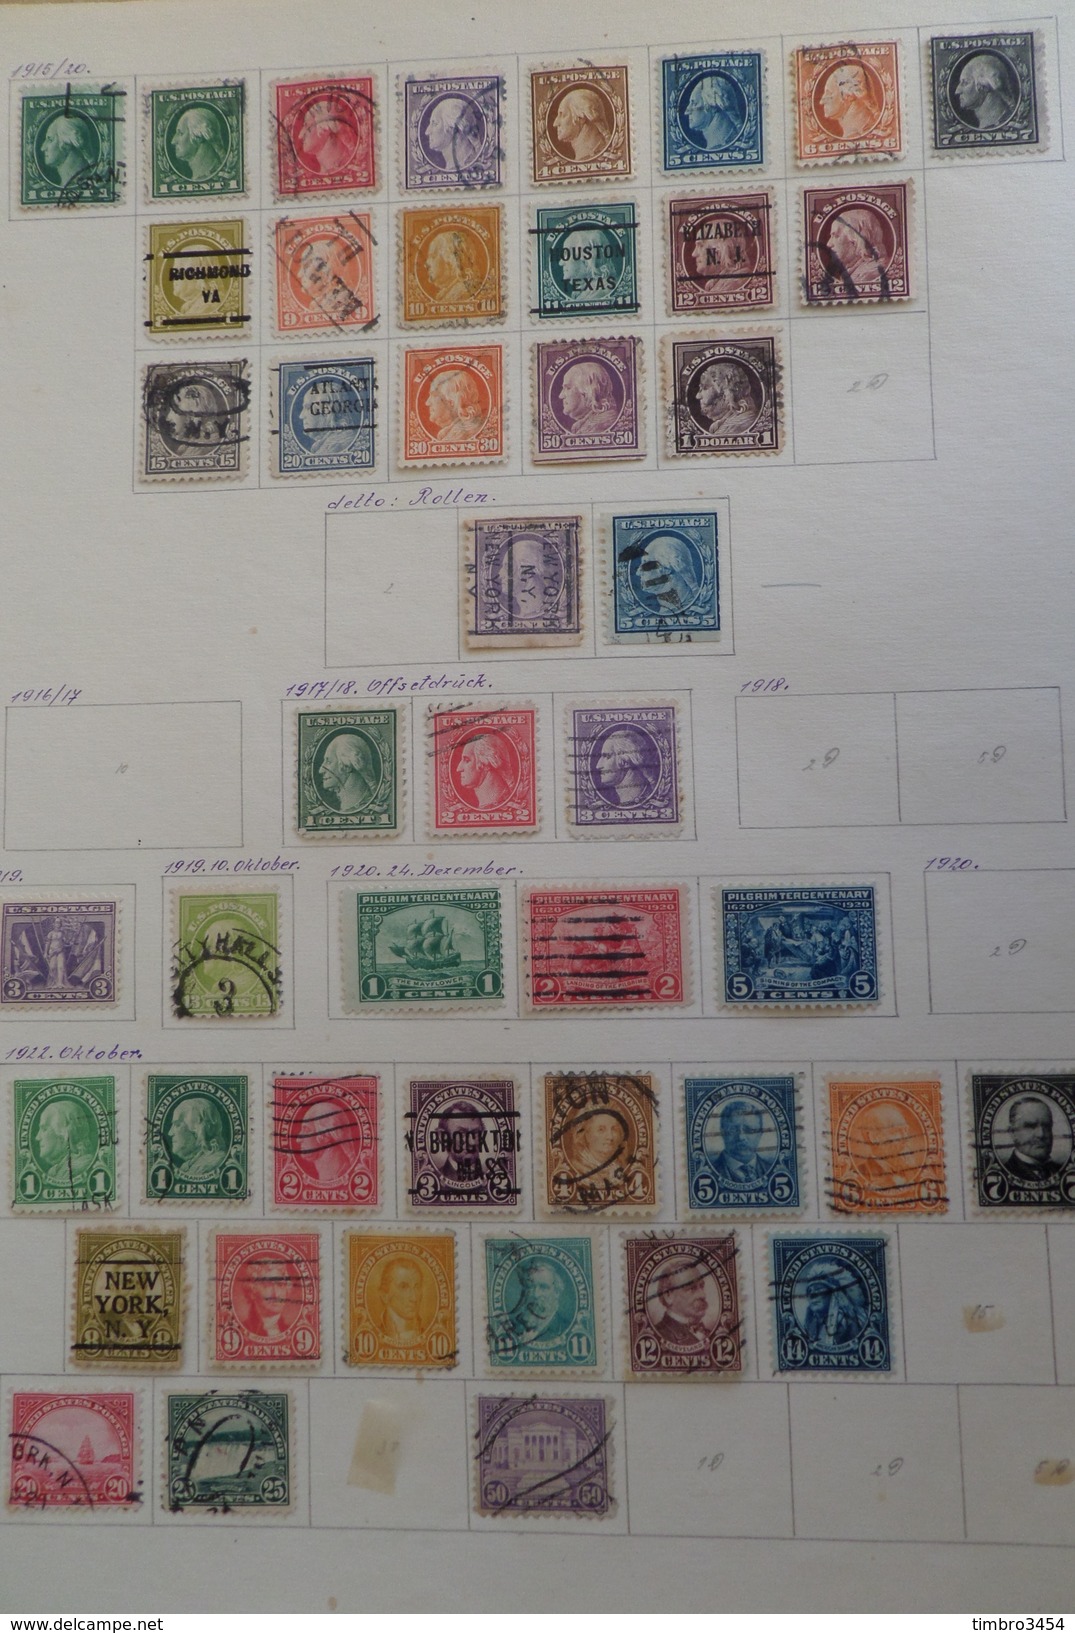 Superbe vrac de milliers de timbres tous pays. Anciens, collections, bonnes valeurs, très varié. Cote énorme!! A saisir!